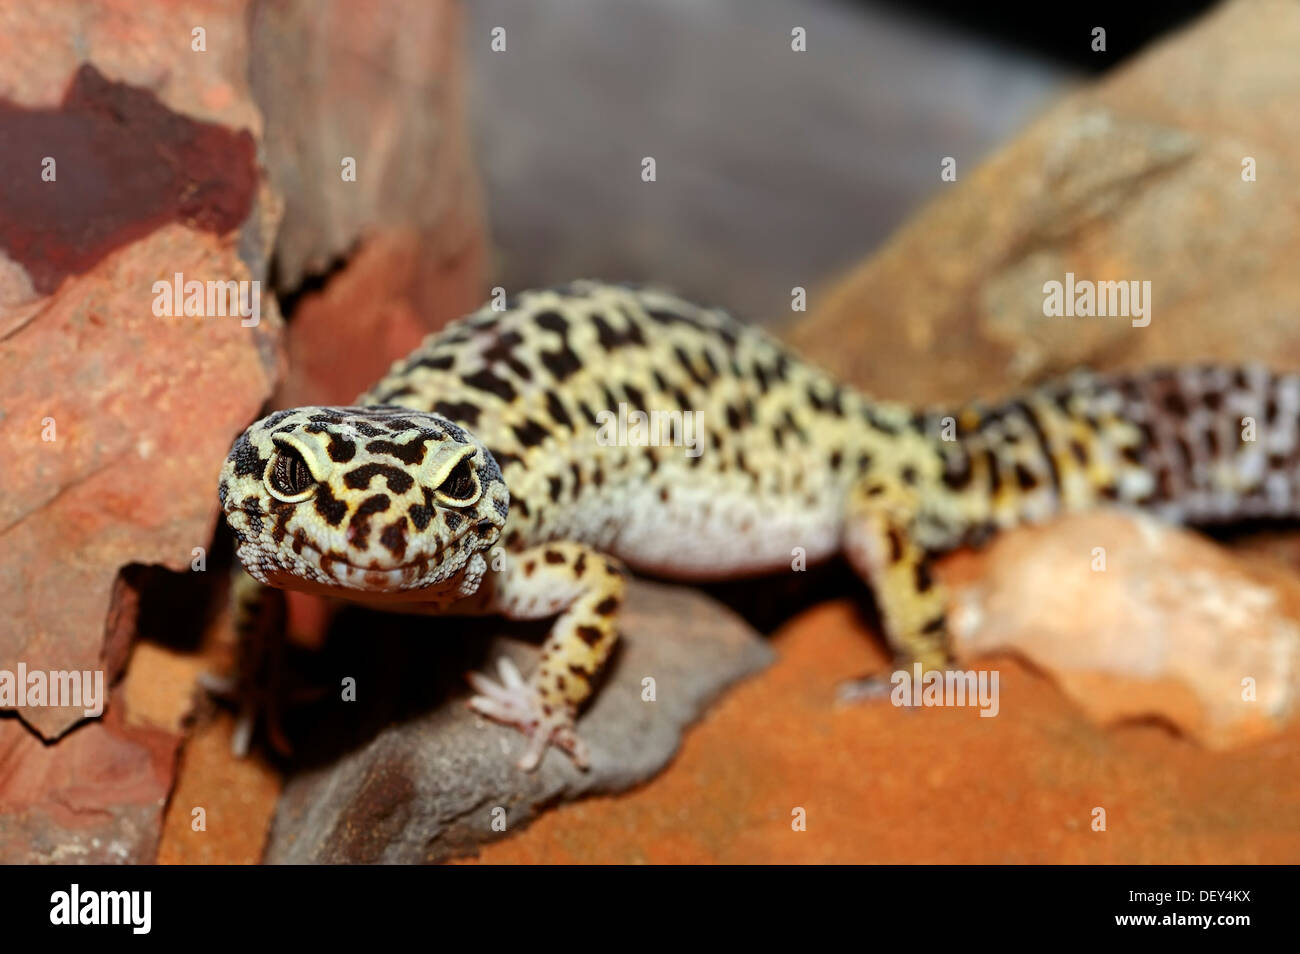 Le gecko léopard (Eublepharis macularius), portrait, originaire d'Asie, captive, Kamen, Rhénanie du Nord-Westphalie, Allemagne Banque D'Images